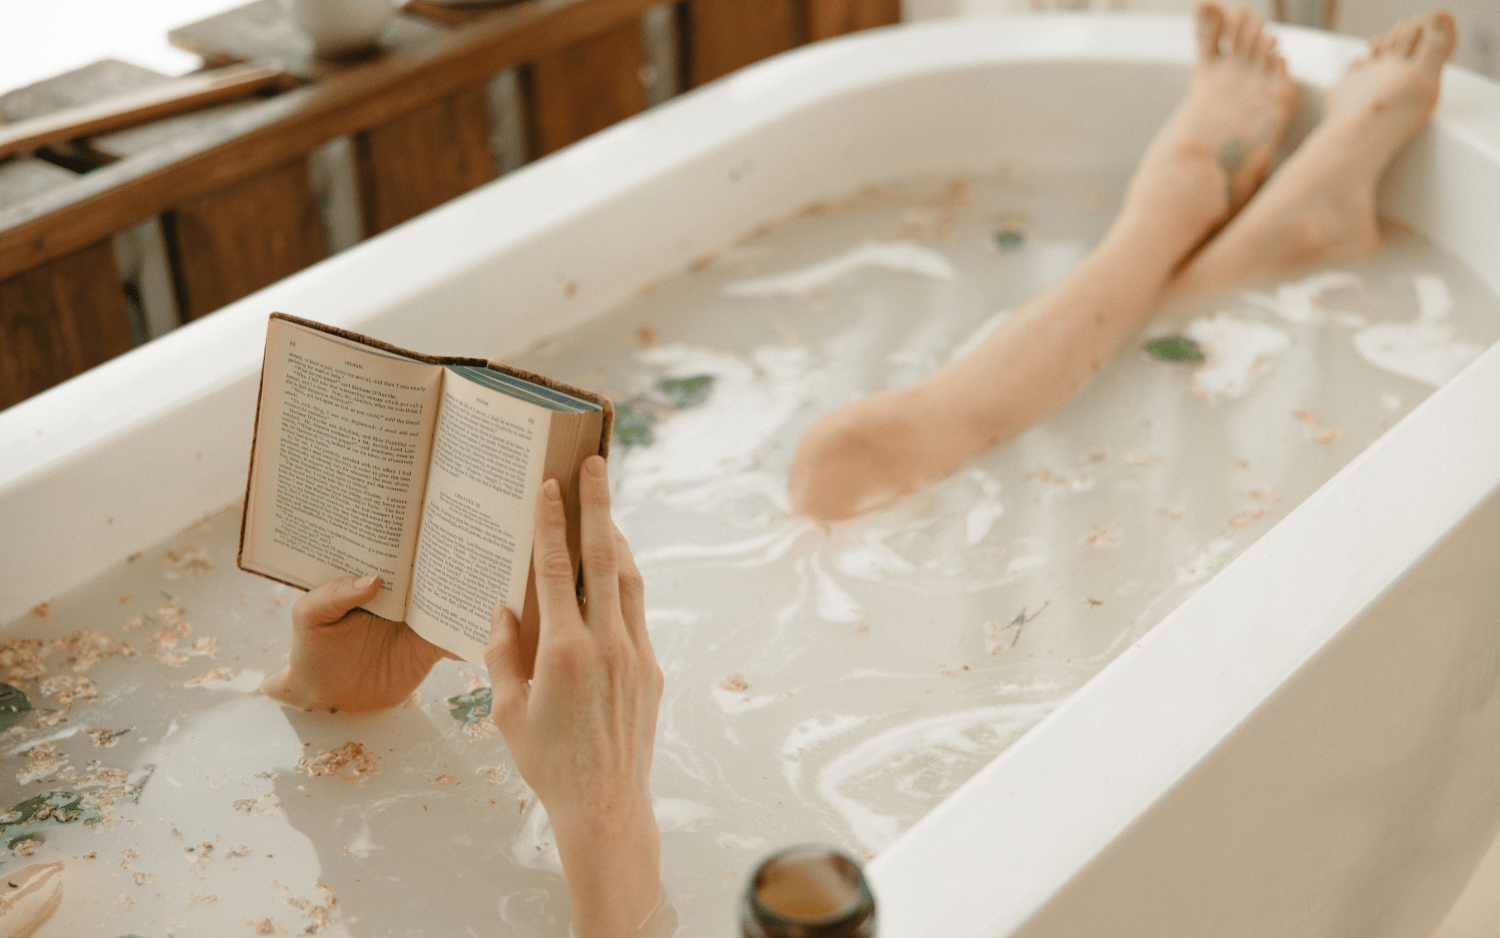 person bathing using nefertem products